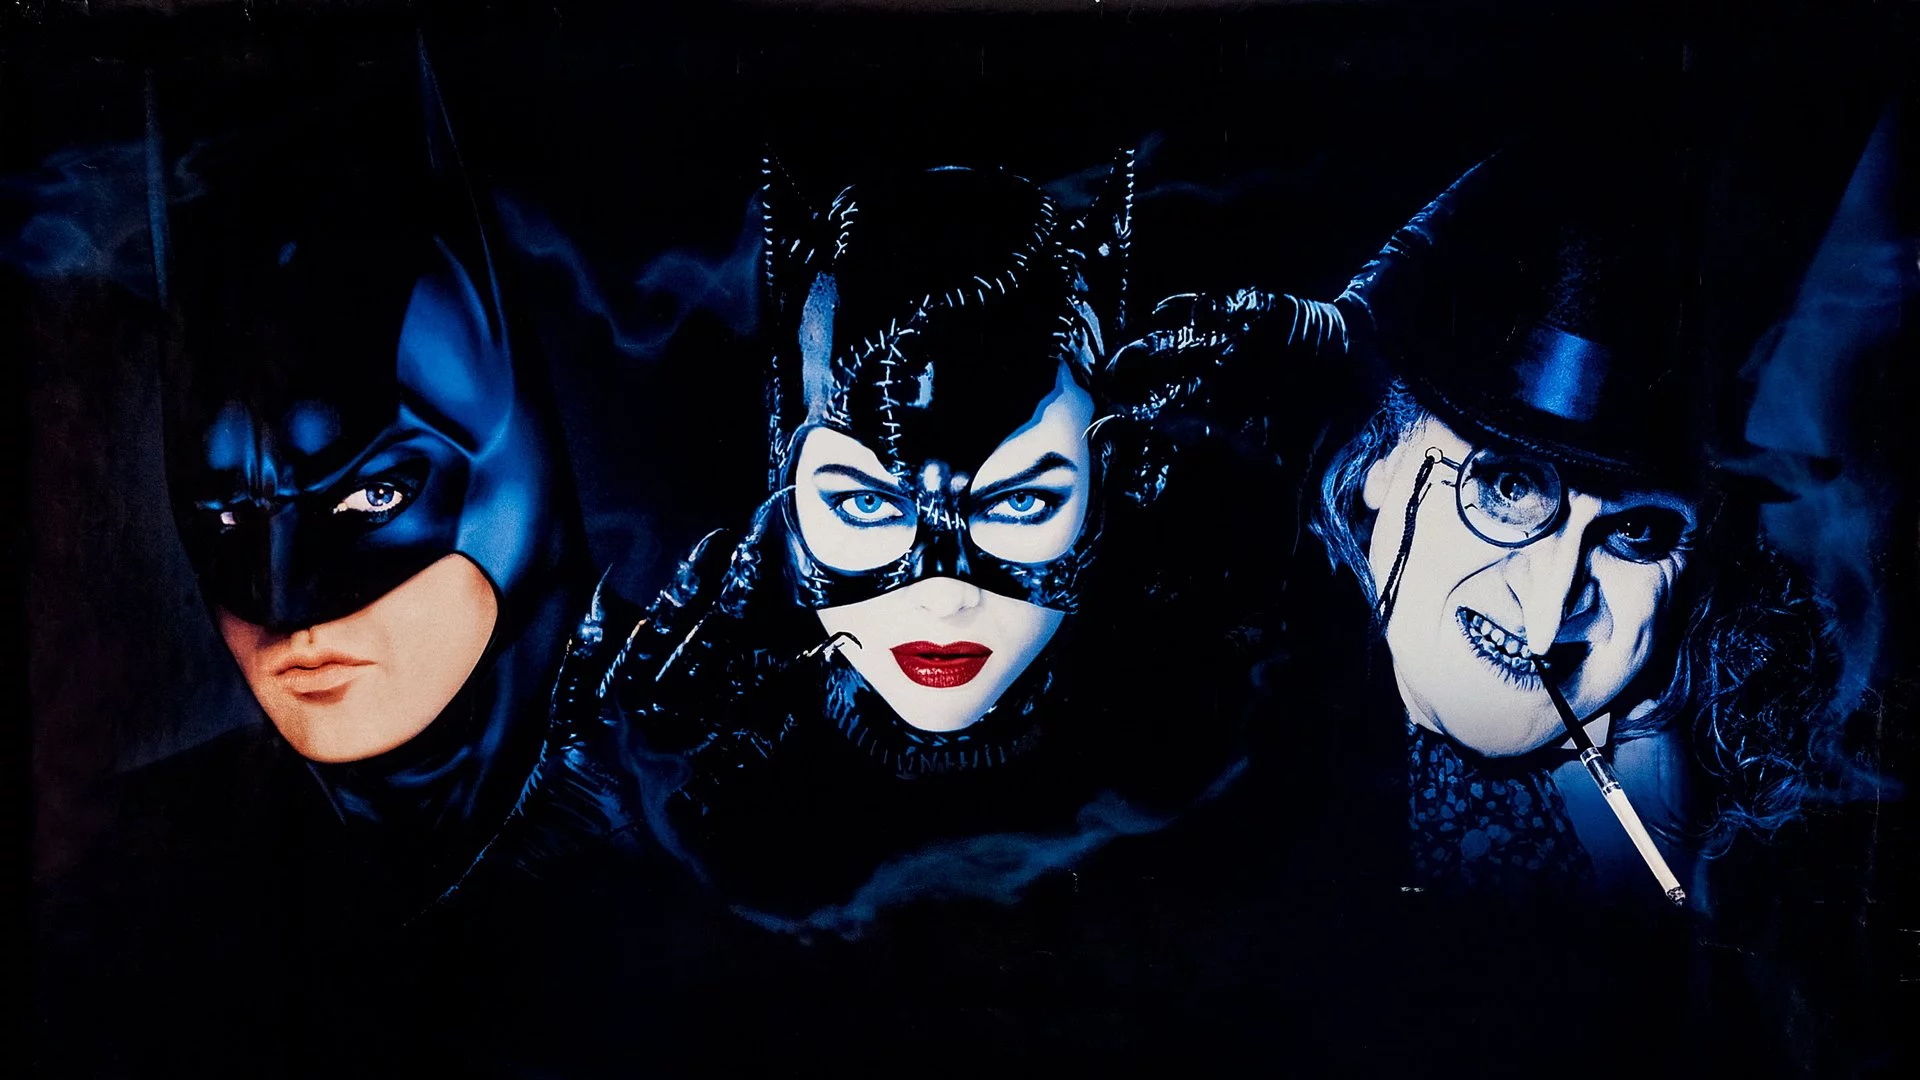 Powrót Batmana zadebiutował 32 lata temu! Jak zmienili się aktorzy?